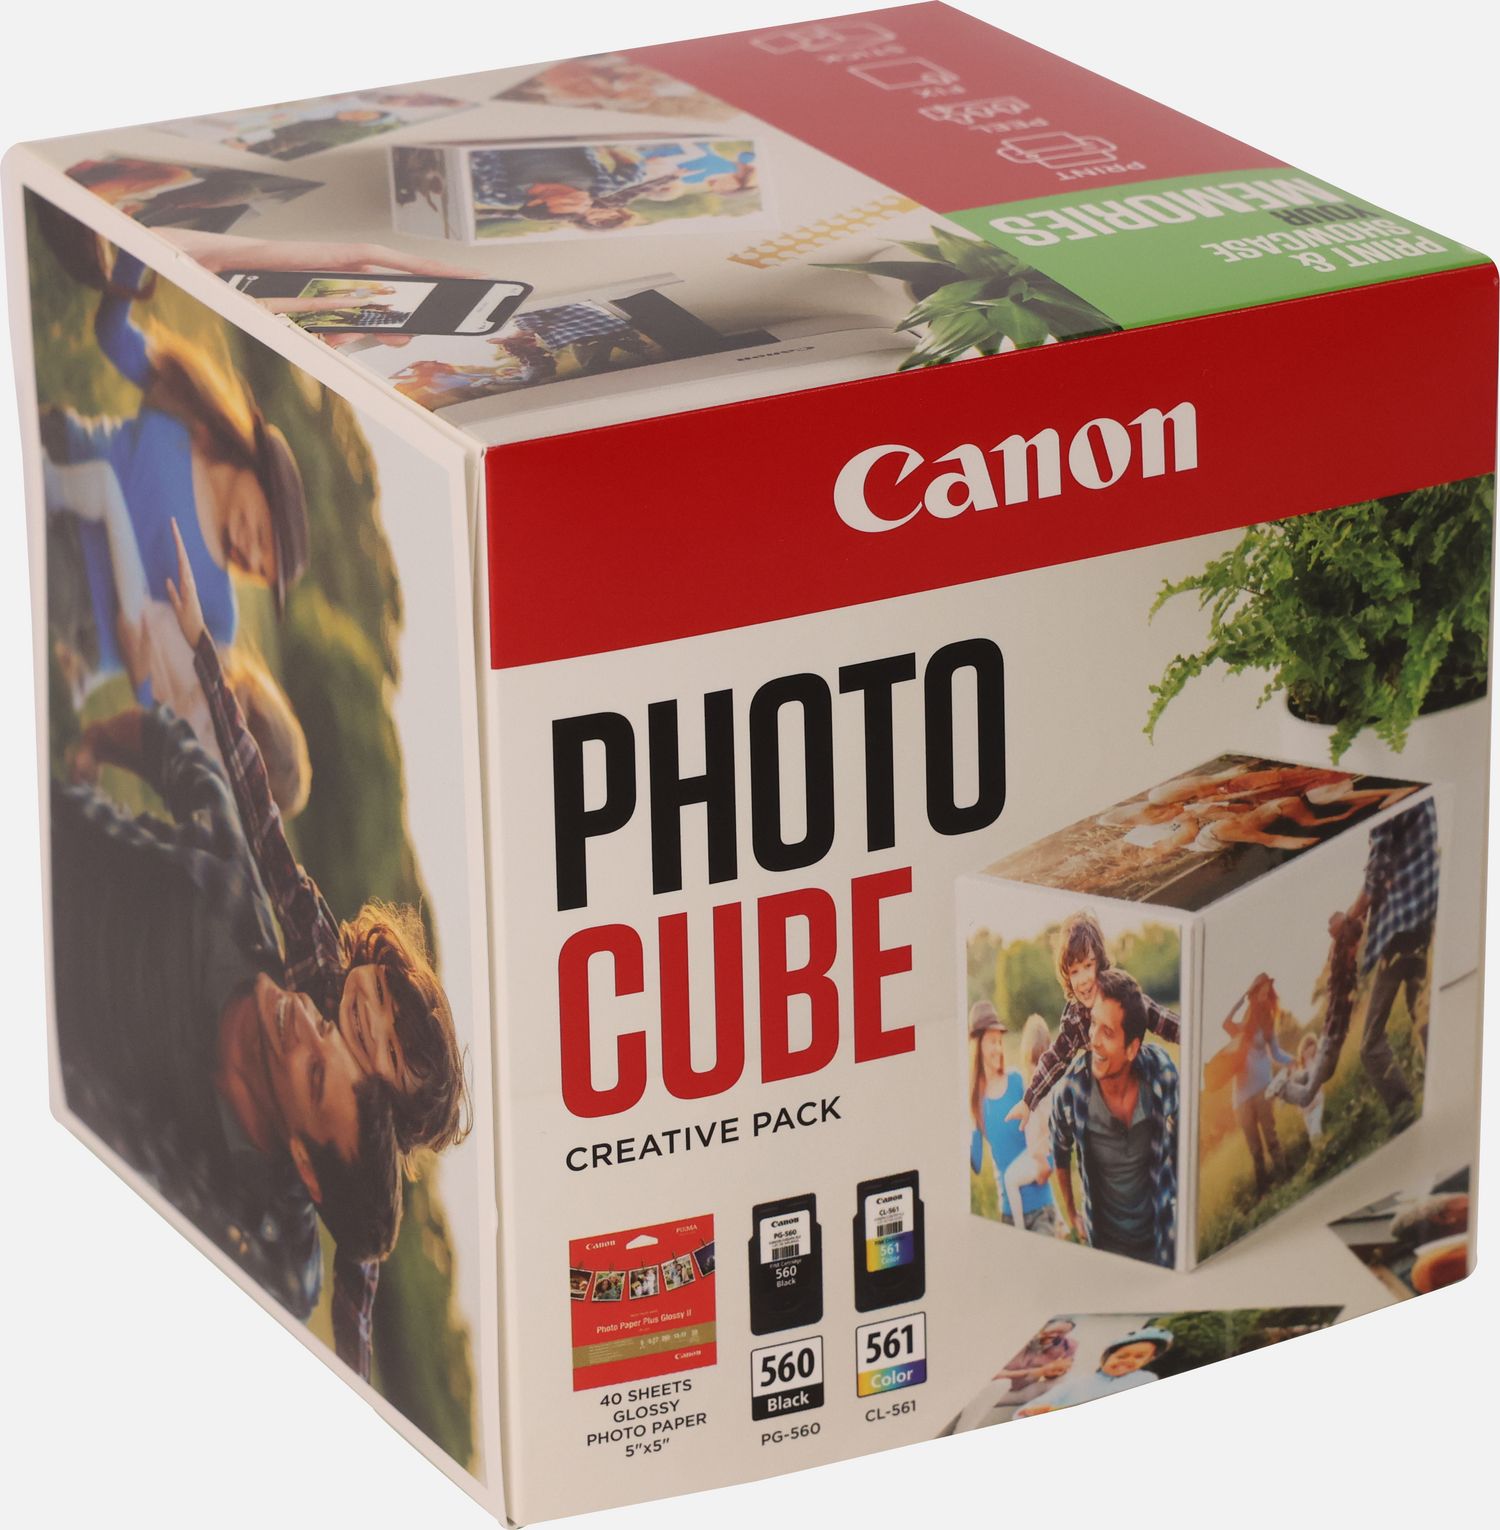 Coffret Canon Photo Cube, avec cartouches d'encre PG-560 et CL-561 et  papier photo glacé Extra II PP-201 13 × 13 cm (40 feuilles) - Pack créatif,  vert — Boutique Canon France